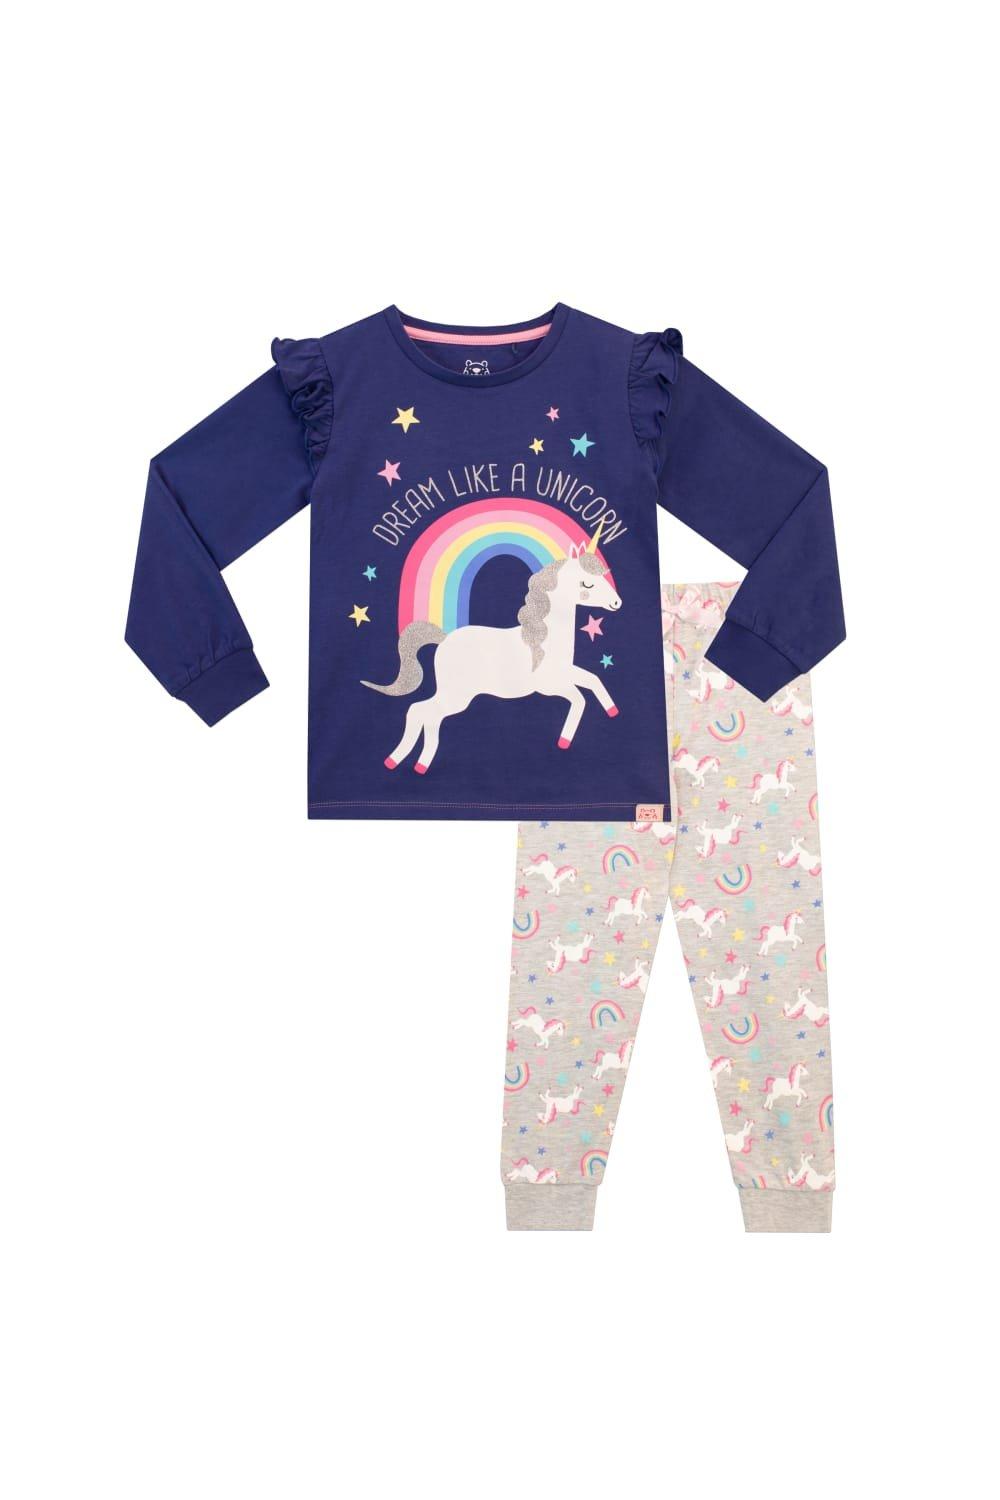 Dream Like A Unicorn Pyjamas